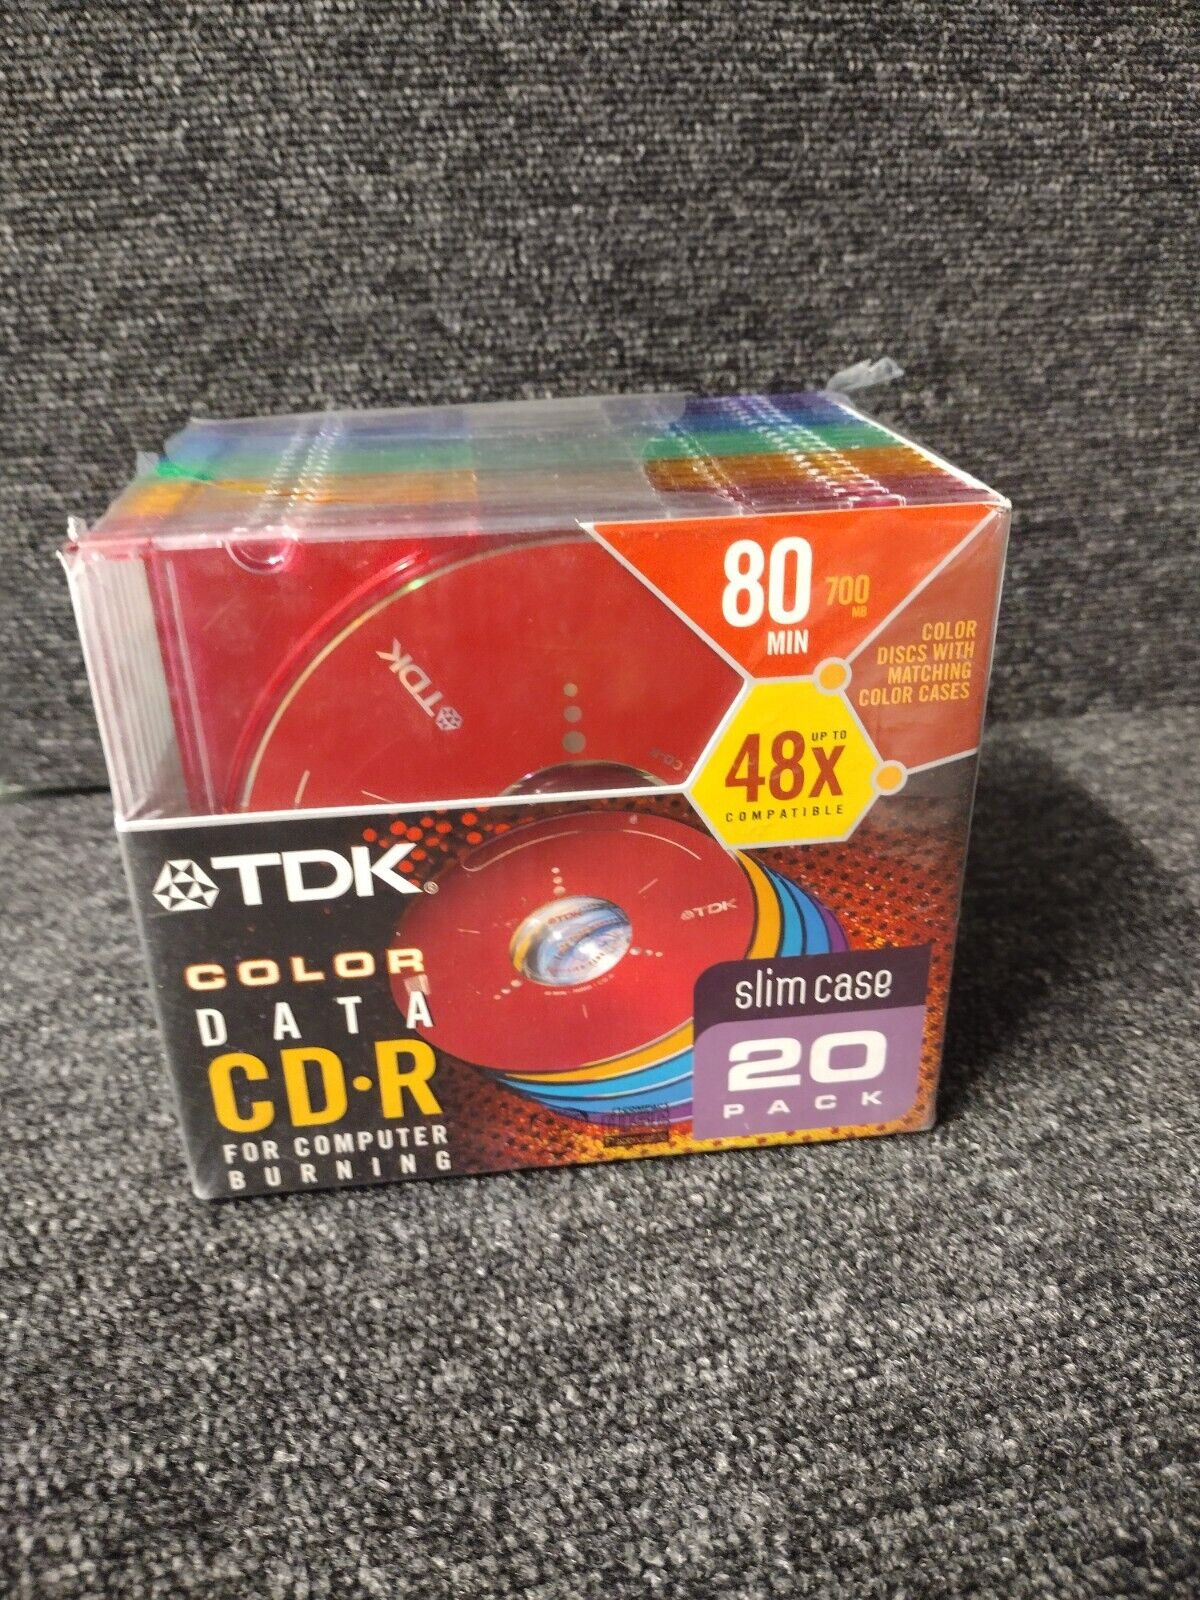 TDK Color Data CD-R 20 Pack 48x 80min 700mb Computer Burning Slim Case